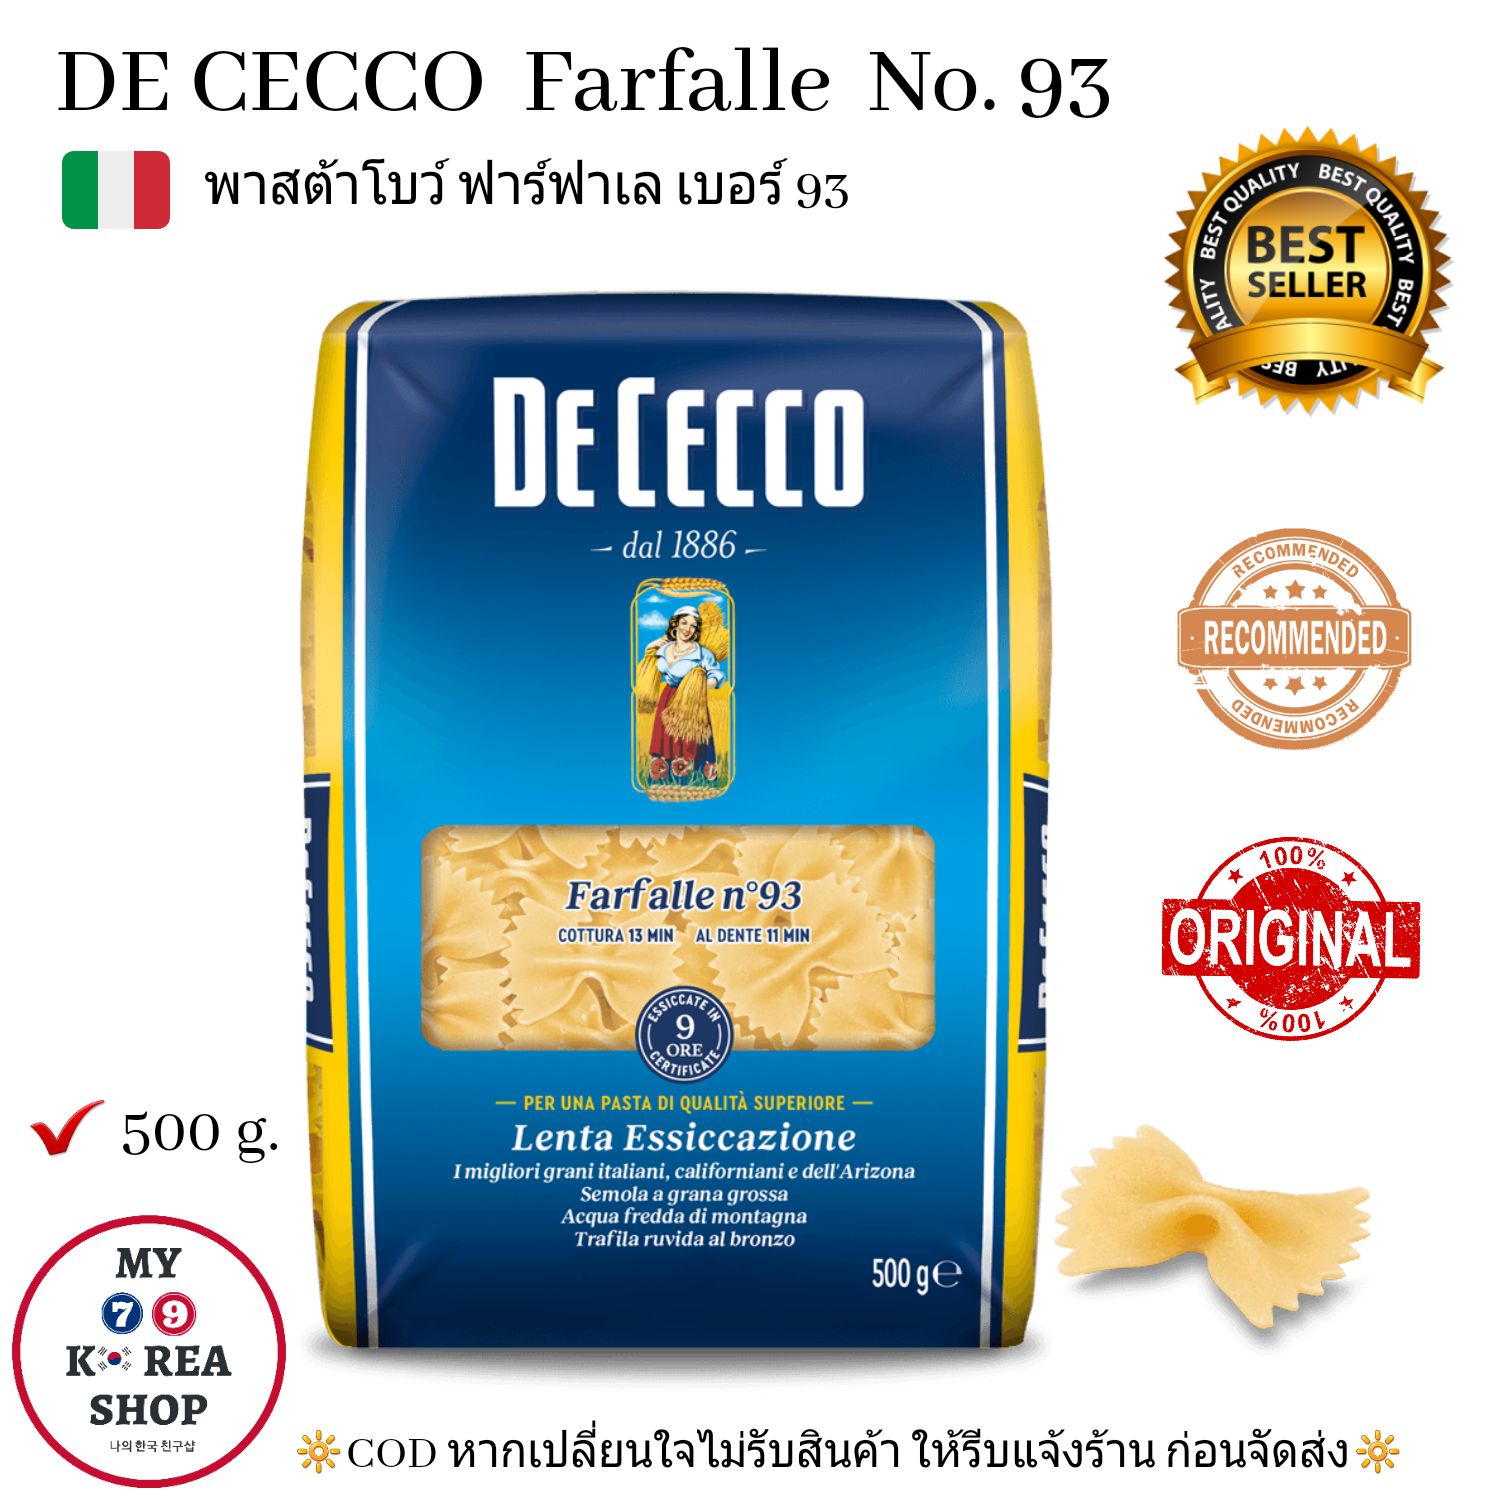 DE CECCO Farfalle  No.93 (500g.) พาสต้ารูปโบว์ ฟาร์ฟาเล  เบอร์ 93